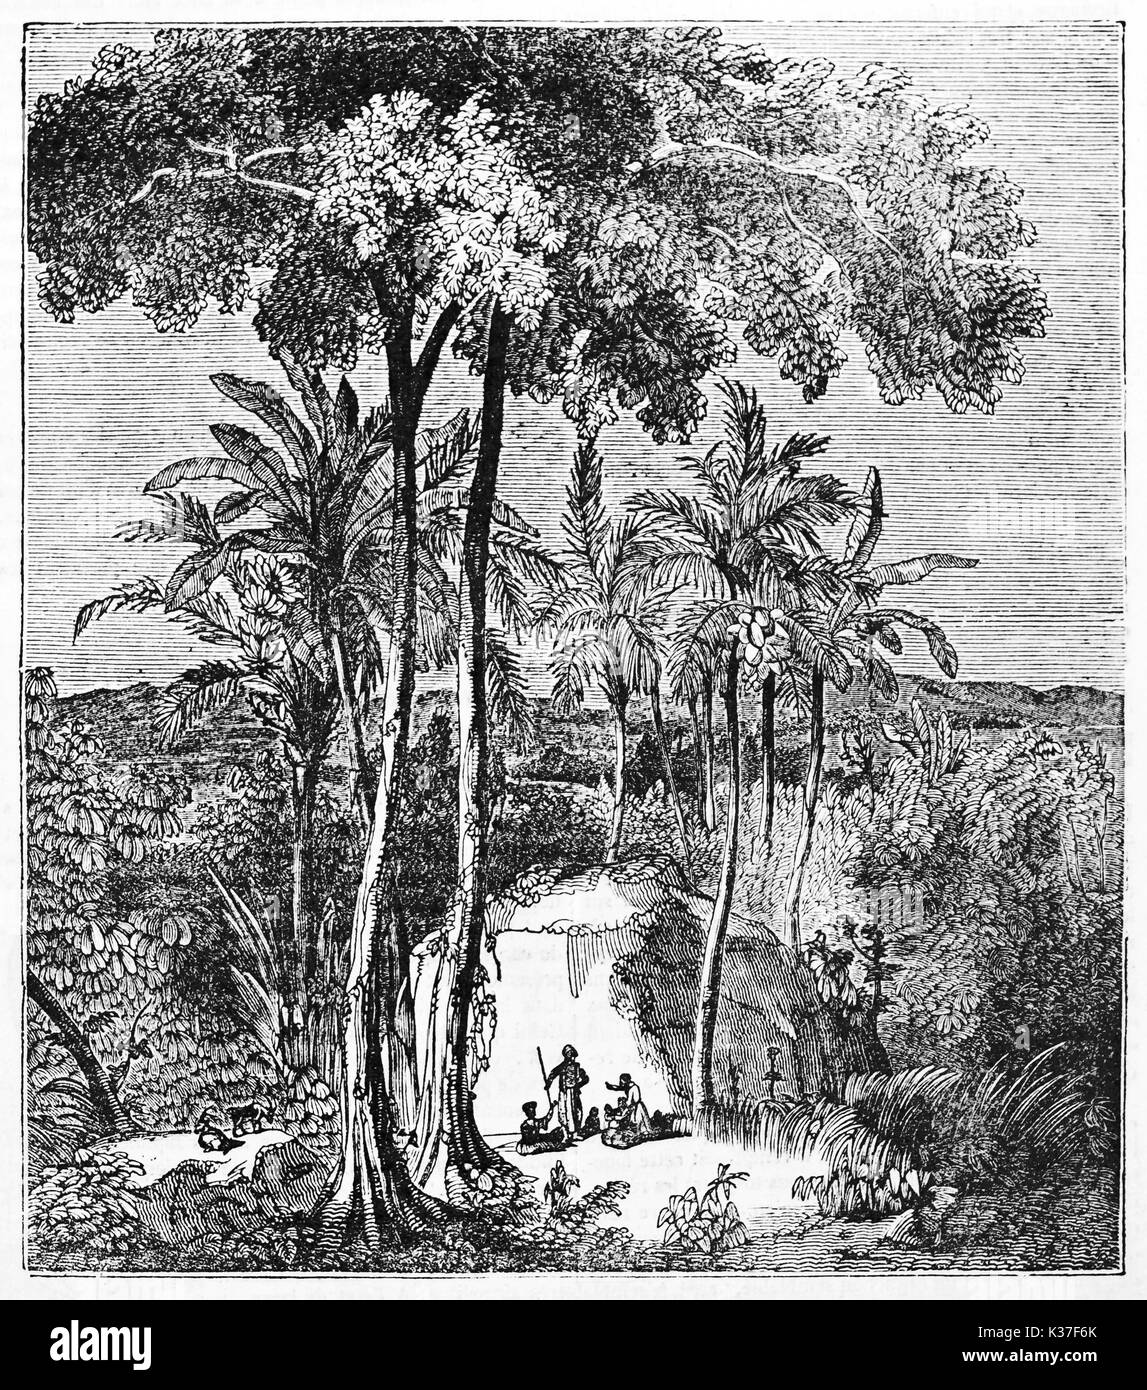 Ancienne illustration botanique de Antiaris toxicaria Antiaris () également connu sous le nom de l'arbre Upas Java Indonésie, grand arbre entouré par la nature. Auteur non identifié publié le magasin pittoresque Paris 1834 Banque D'Images